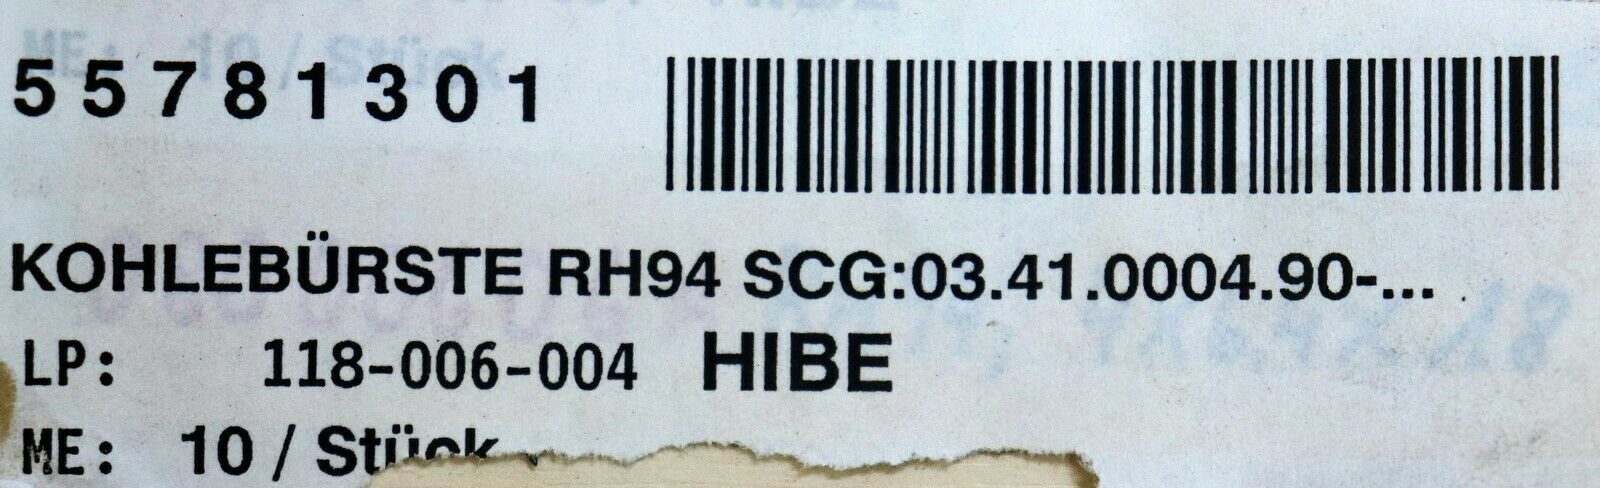 2 Stück Kohlebürste RH94 4x6,3x16mm mit Feder und Teller SCG 03.41.0009.90